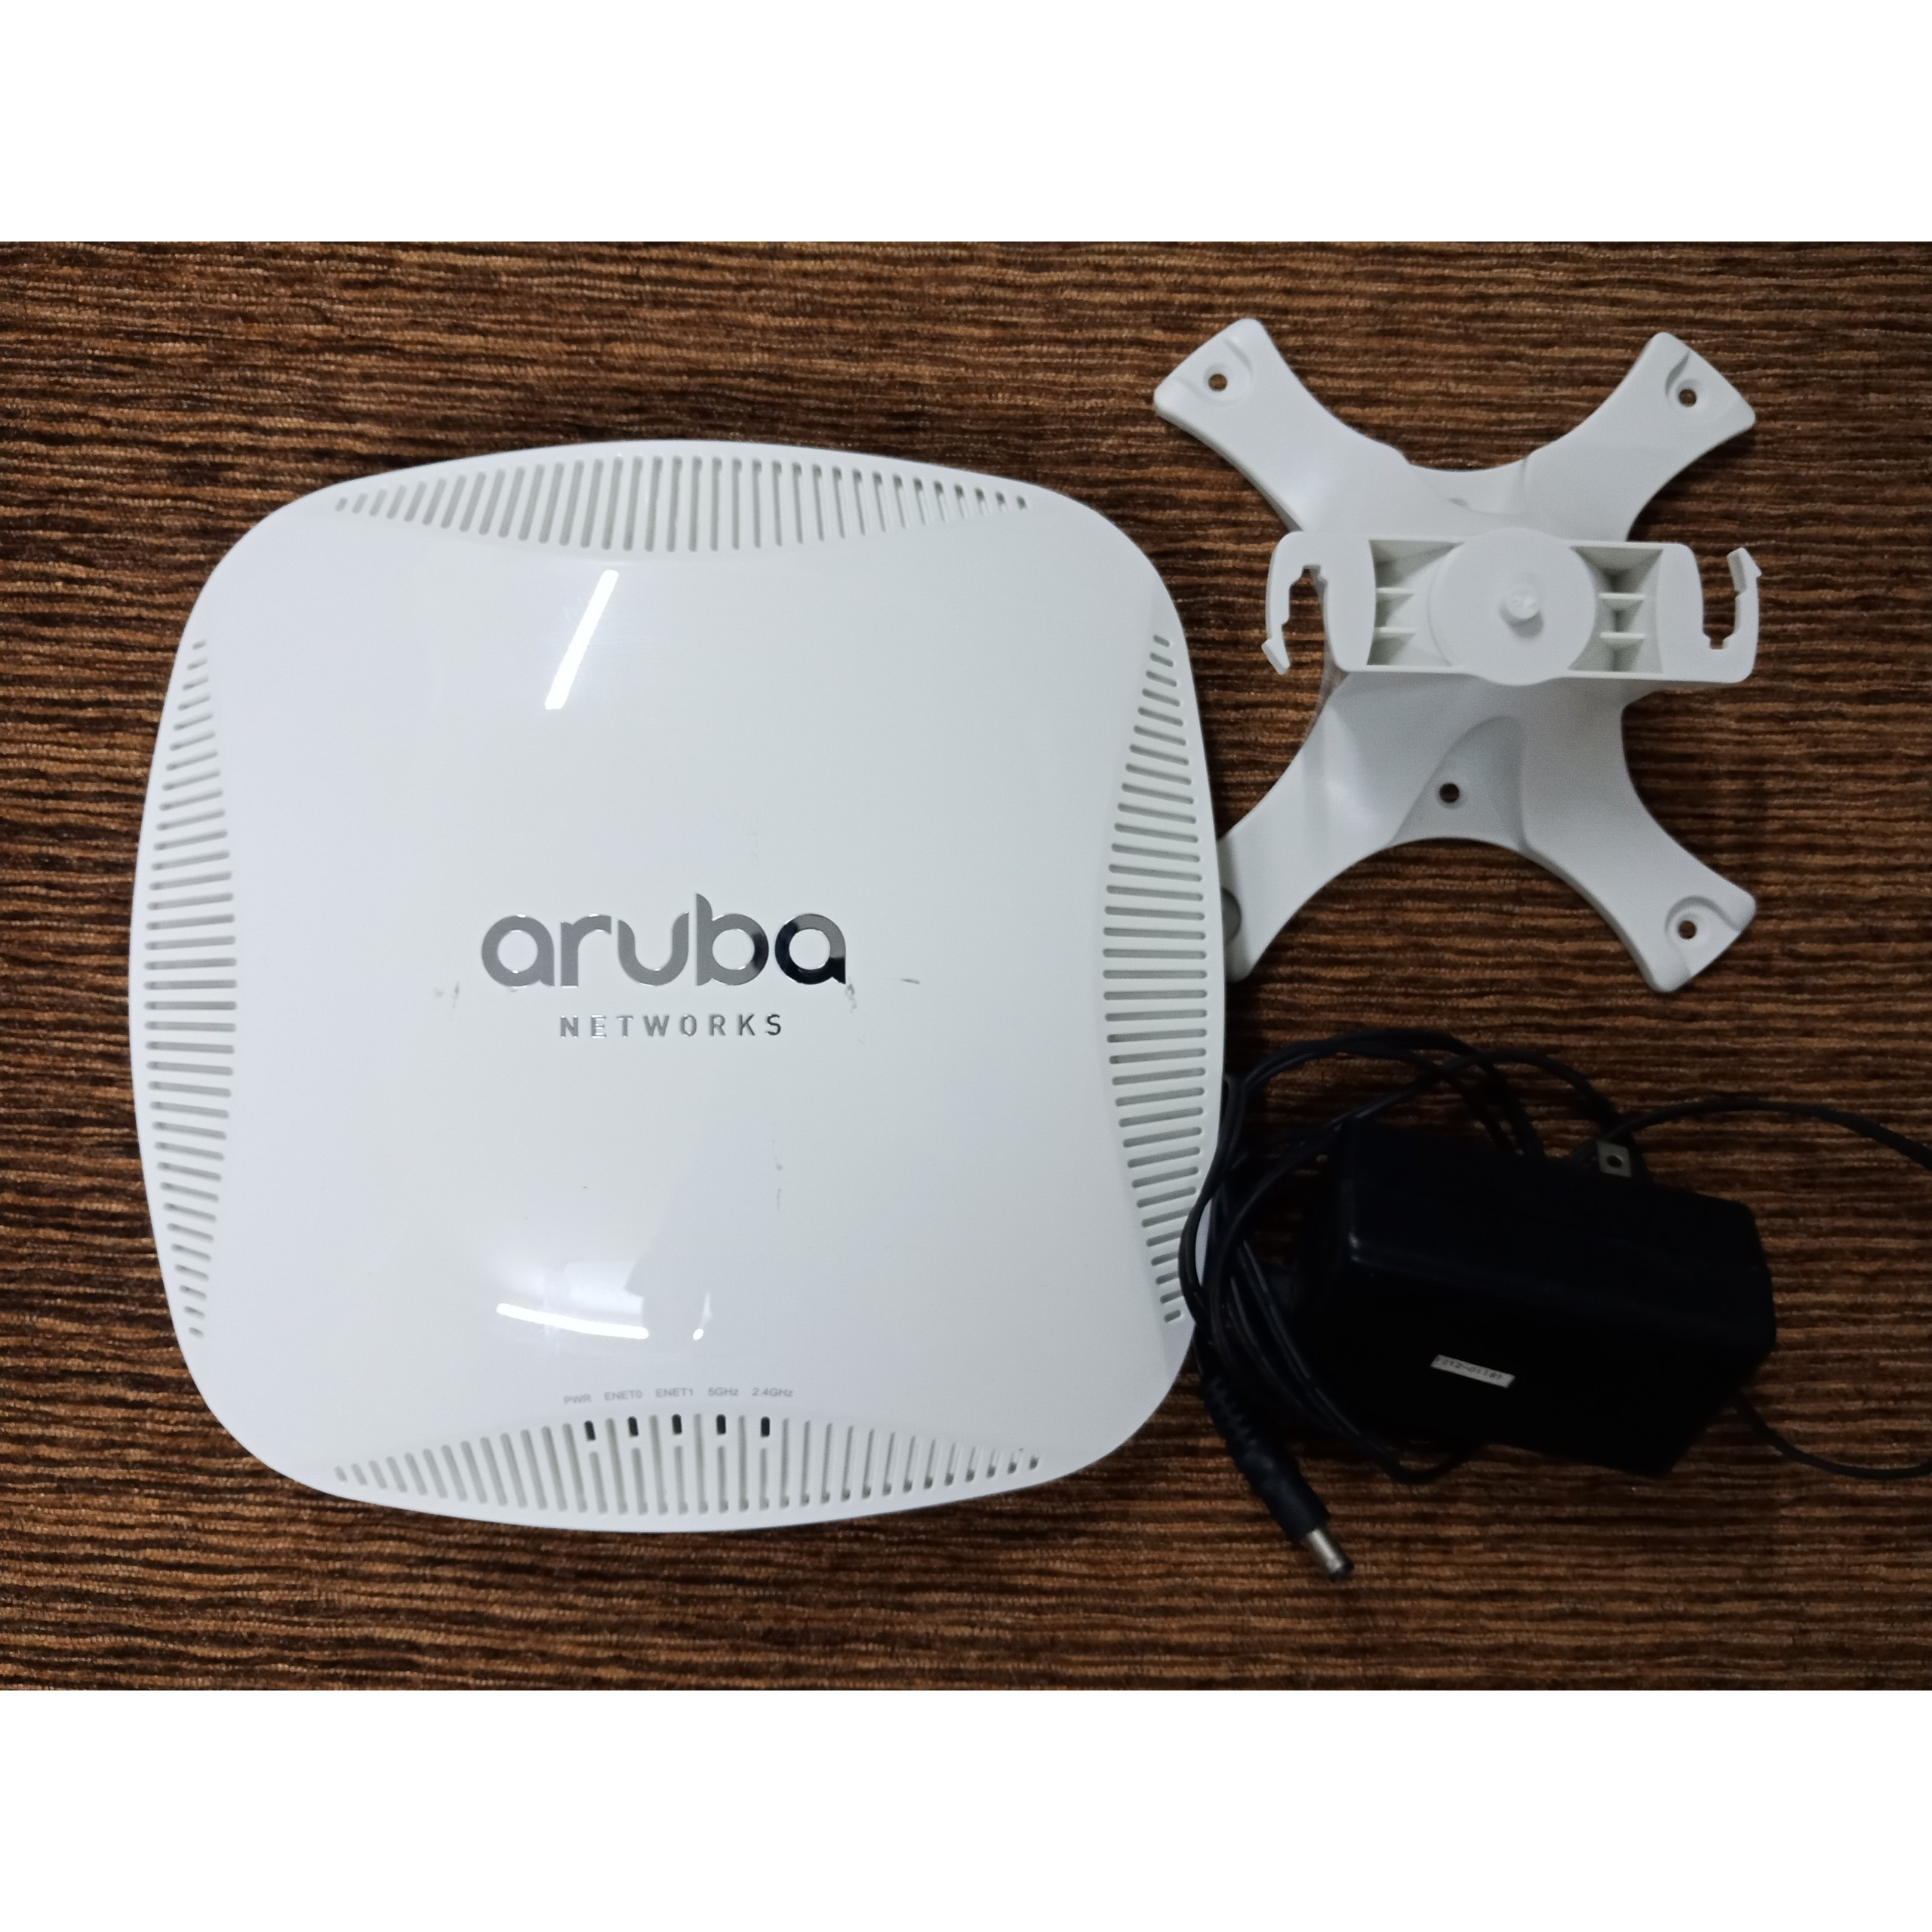 Bộ phát Wifi chuyên dụng Aruba AP-225 RW kèm chân đế treo trần và nguồn 12V mới 99% - Hàng chính hãng - Phát wifi trên 2 băng tần là 2,4Ghz và 5Ghz